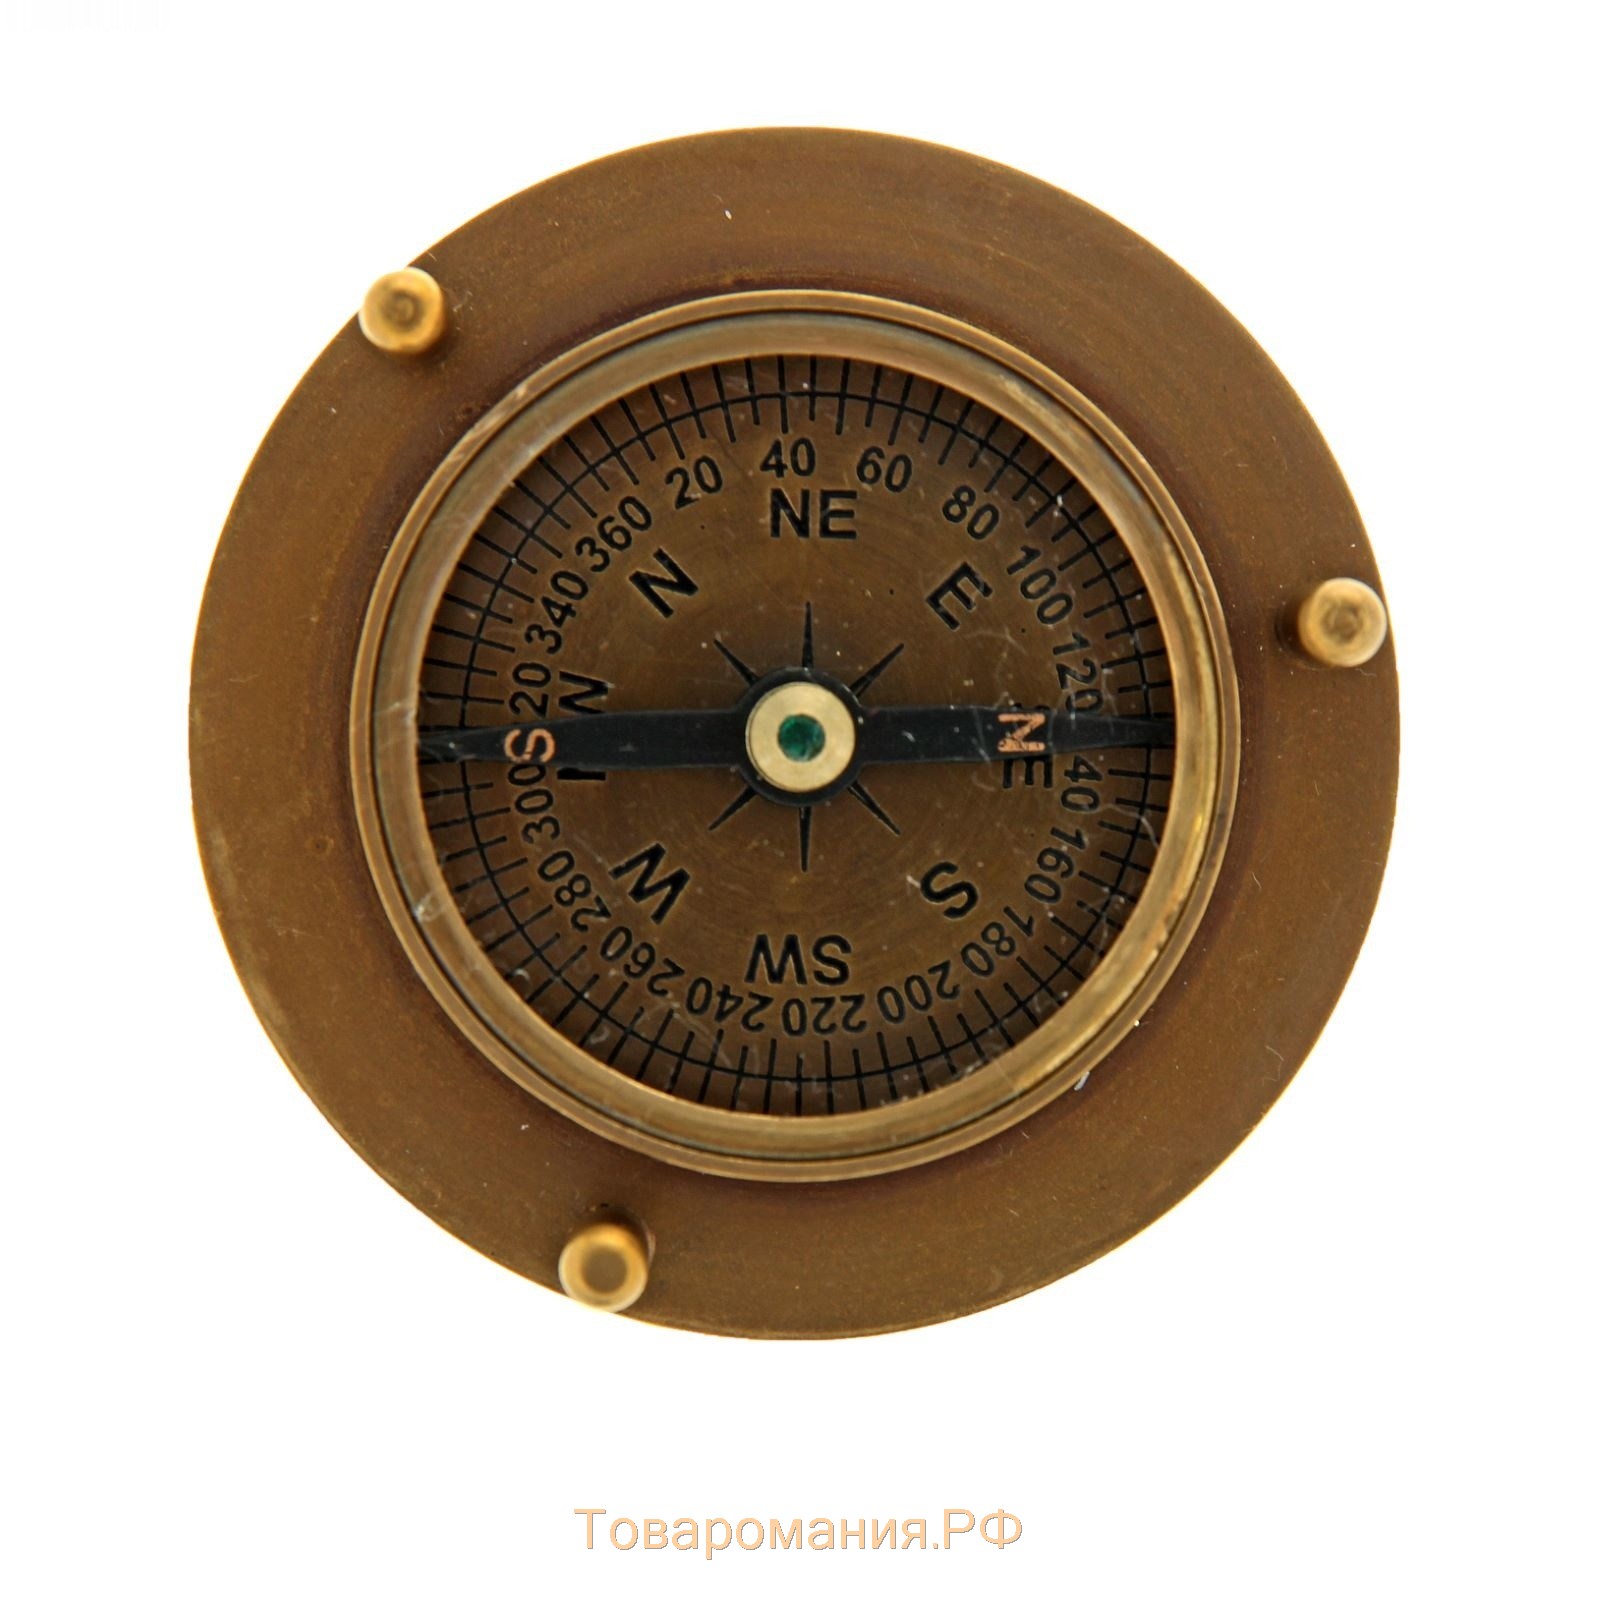 Сувенирные песочные часы с компасом "5 минут"